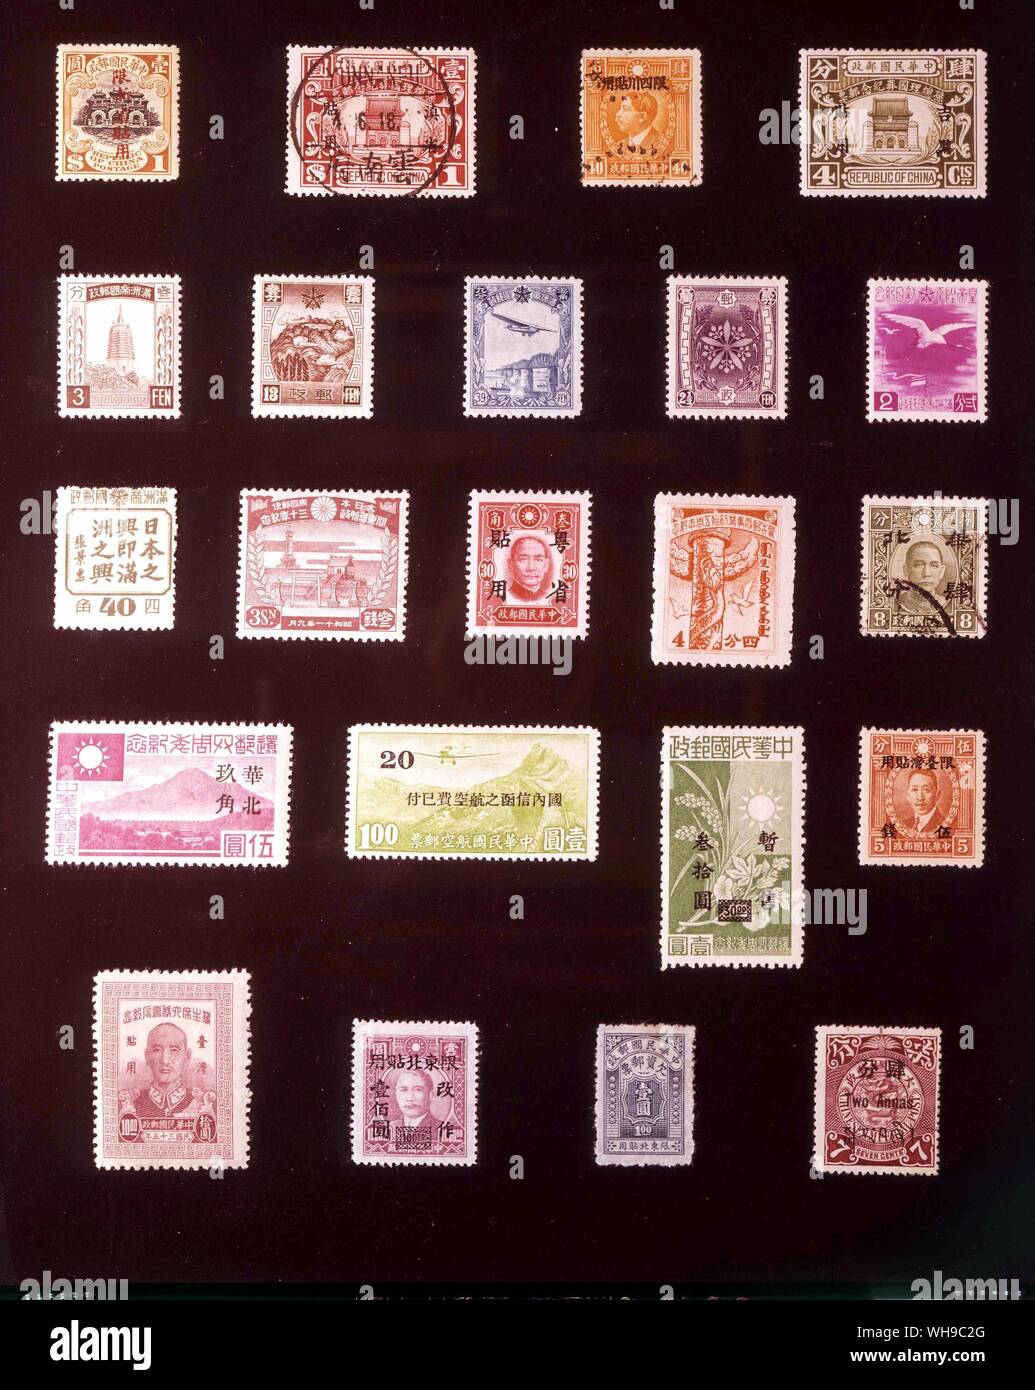 Asien - chinesischen Provinzen: (von links nach rechts) 1. Sinkiang, 1 Dollars, 1915, 2. Yunnan, 1 Dollars, 1929, 3. Der Szechuan-küche, 40 Cent, 1933, 4. Kirin und Heilungchang, 4 Cent, 1929, 5. Mandschukuo, 3 fen, 1934, 6. Mandschukuo, 13 fen, 1937, 7. Mandschukuo, 39 fen, 1937, 8. Mandschukuo, 2,5 fen, 1937, 9. Mandschukuo, 2 fen, 1940, 10. Mandschukuo, 40 fen, 1944, 11. Kwangtung, 3 Sen, 1936, 12. Kwangtung, 30 Cents 1942, 13. Mengkiang, 4 Cent 1943, 14. North China, 4 Cent 1942, 15. Shanghai und Nanking, 5 Yuan, 1944, 16. Shanghai und Nanking, 20 Sen. 1941, 17. Shanghai und Nanking, 30 Yuan, 1945, 18. Formosa, 5 Sen, Stockfoto